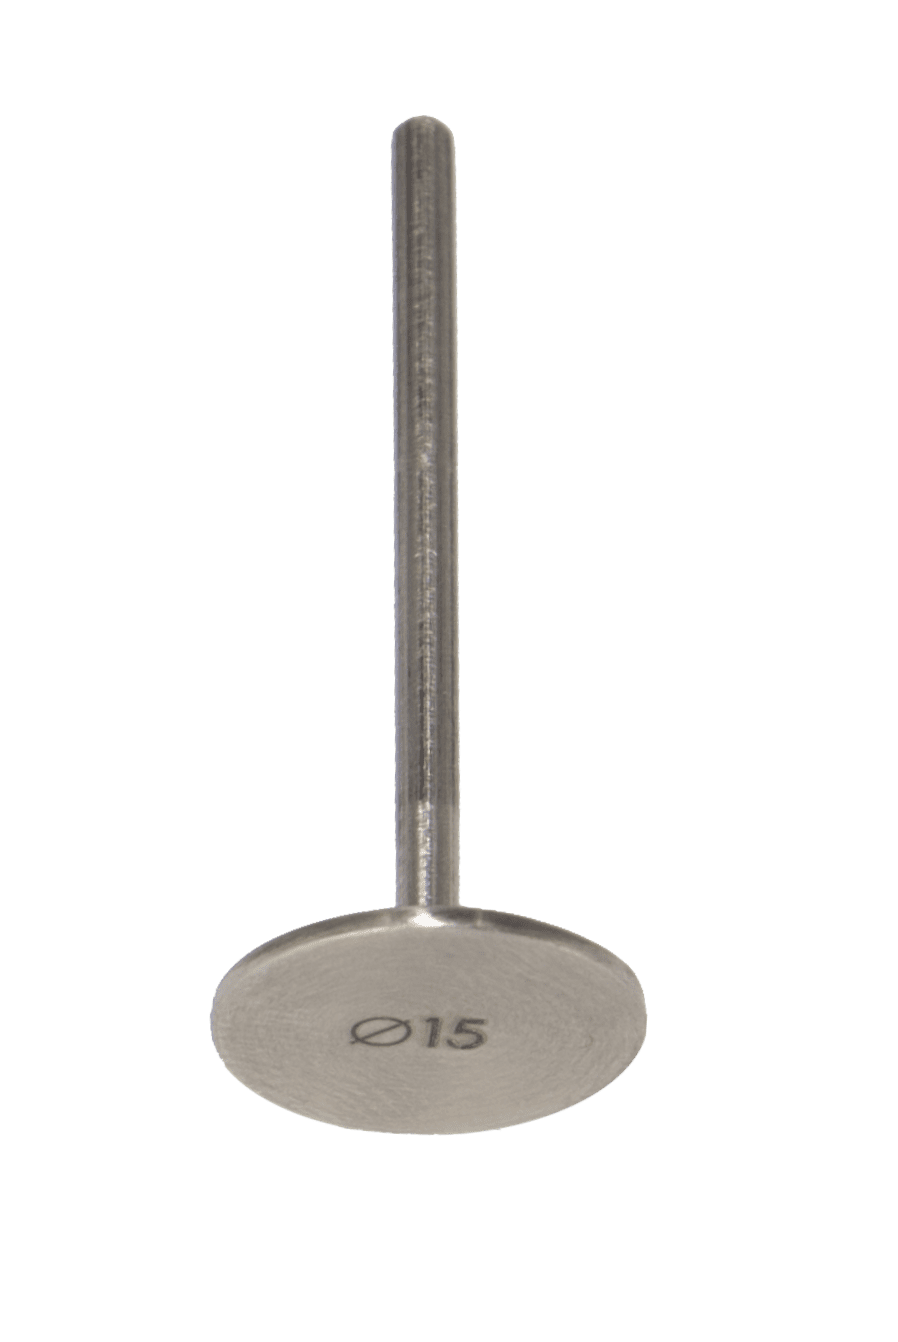 Podo-Disk Regular 15 mm | U-tools